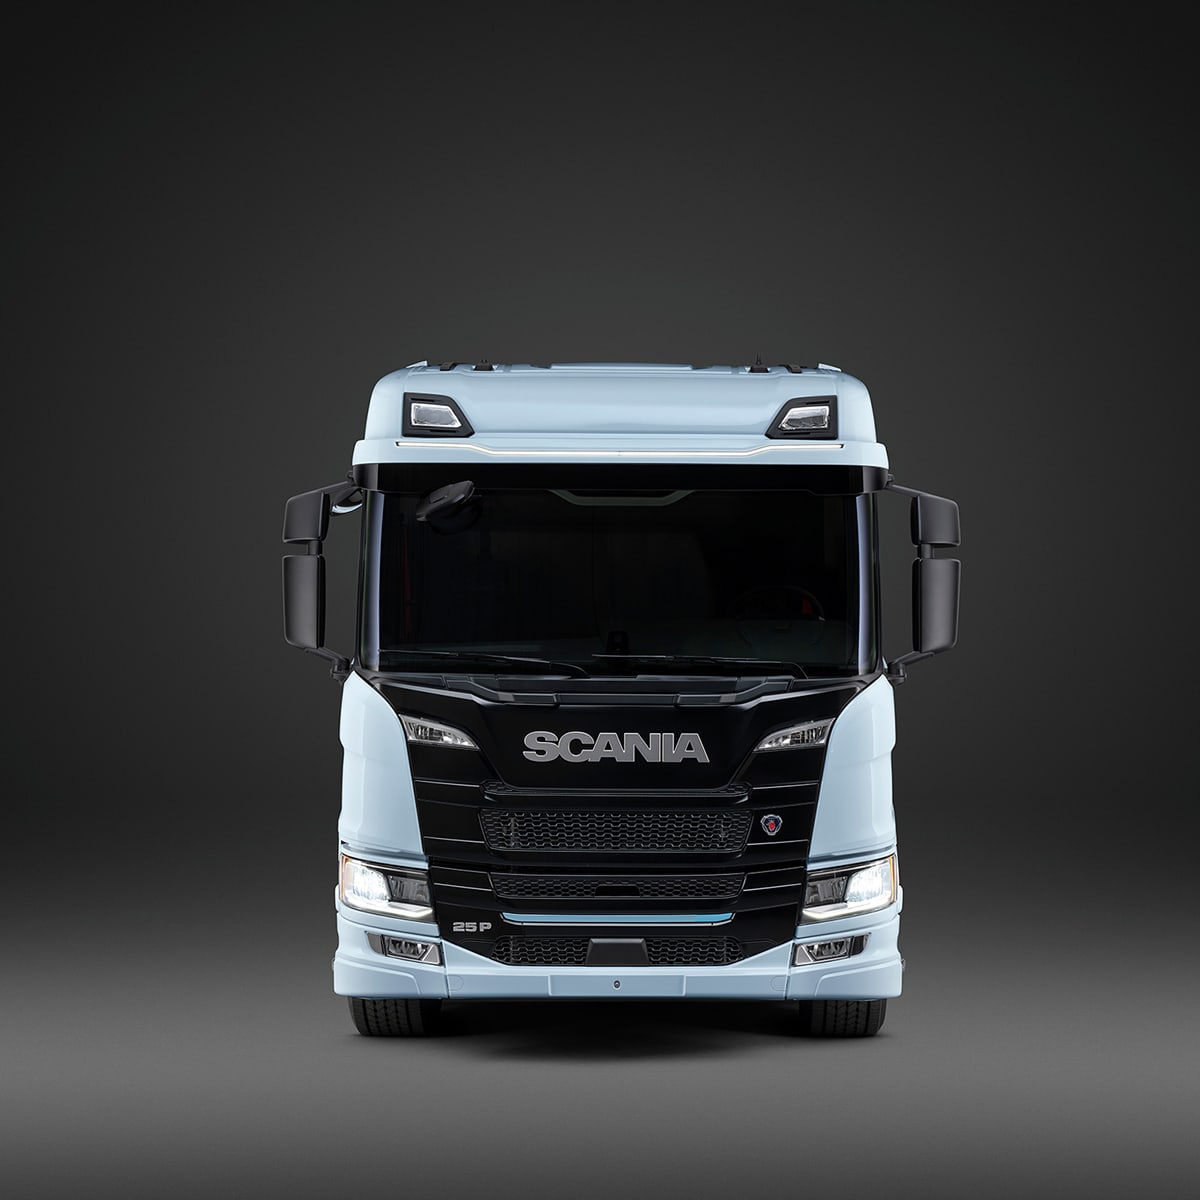 Scania will bis 2040 Verbrennungsmotor aufgeben